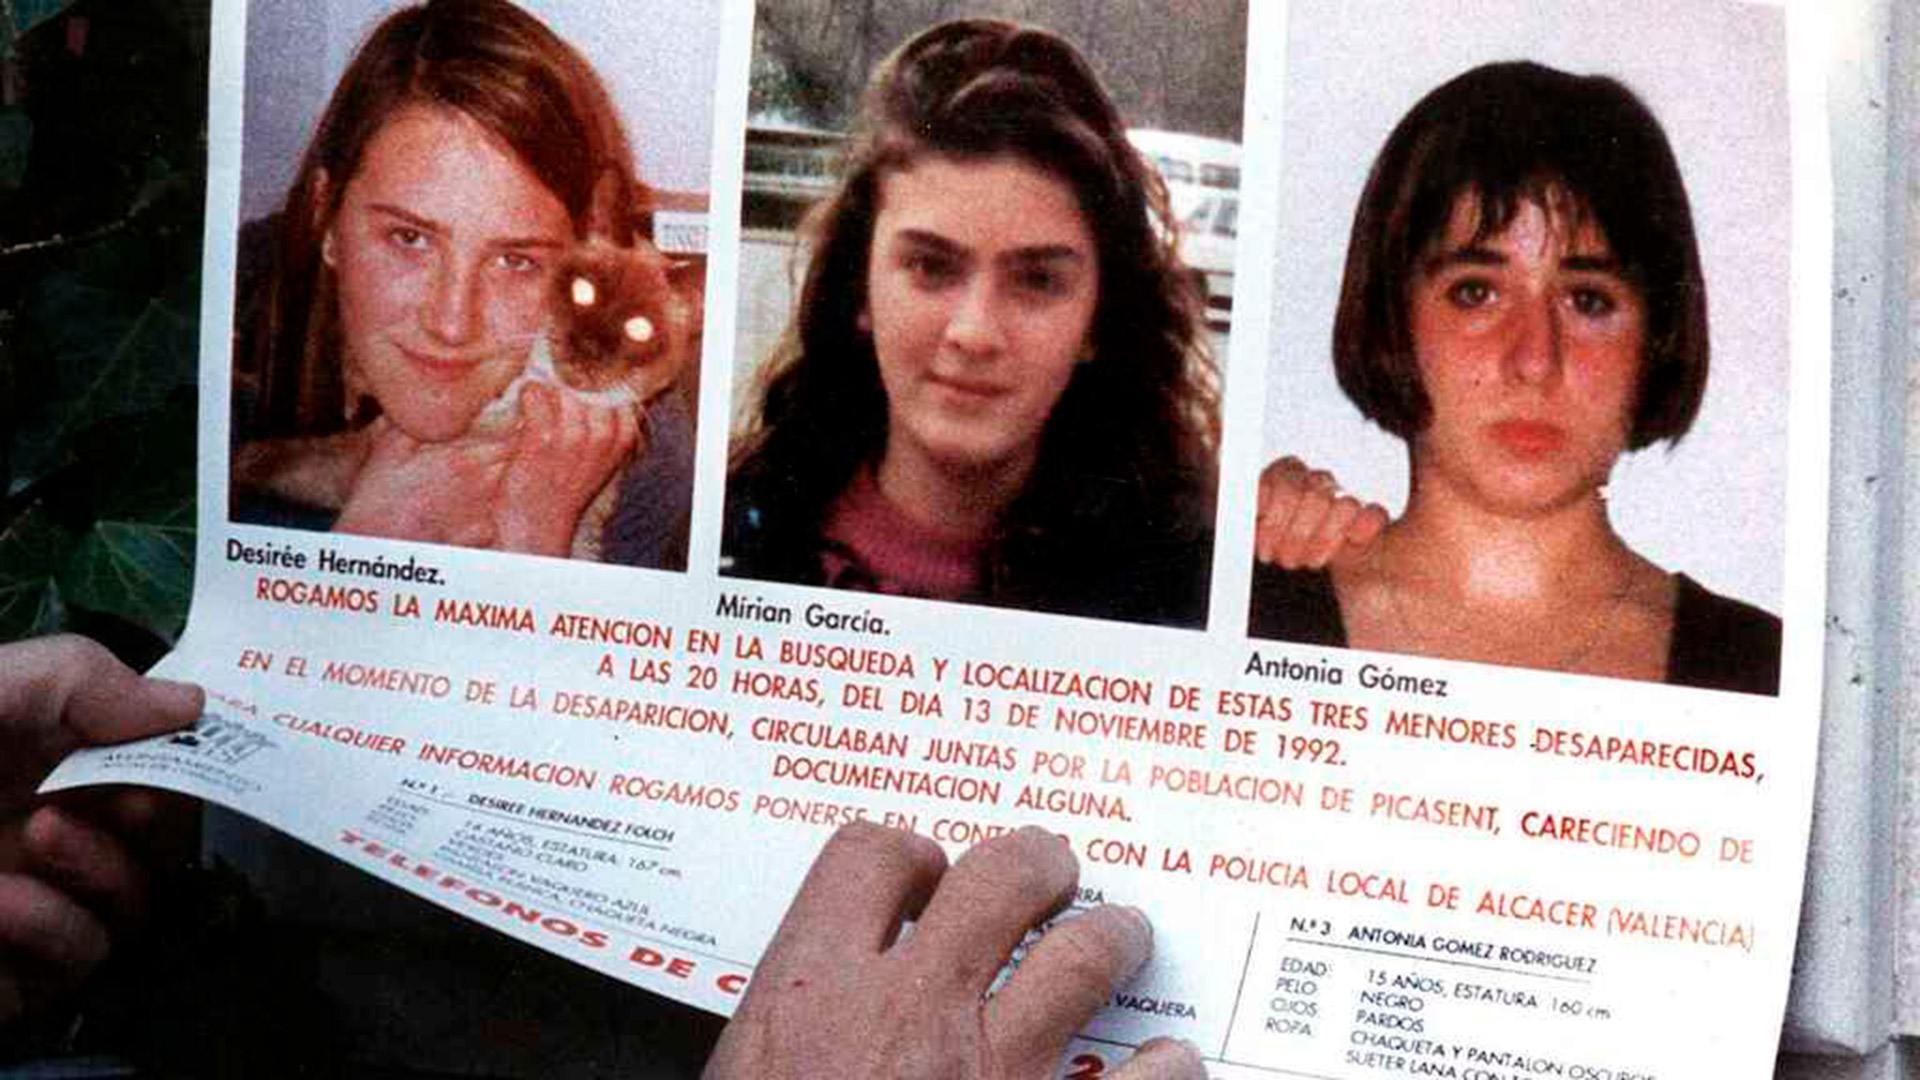 Desirée, Míriam y Toñi, de izquierda a derecha, las menores que desaparecieron en noviembre de 1992 y fueron halladas violadas y asesinadas 75 días después